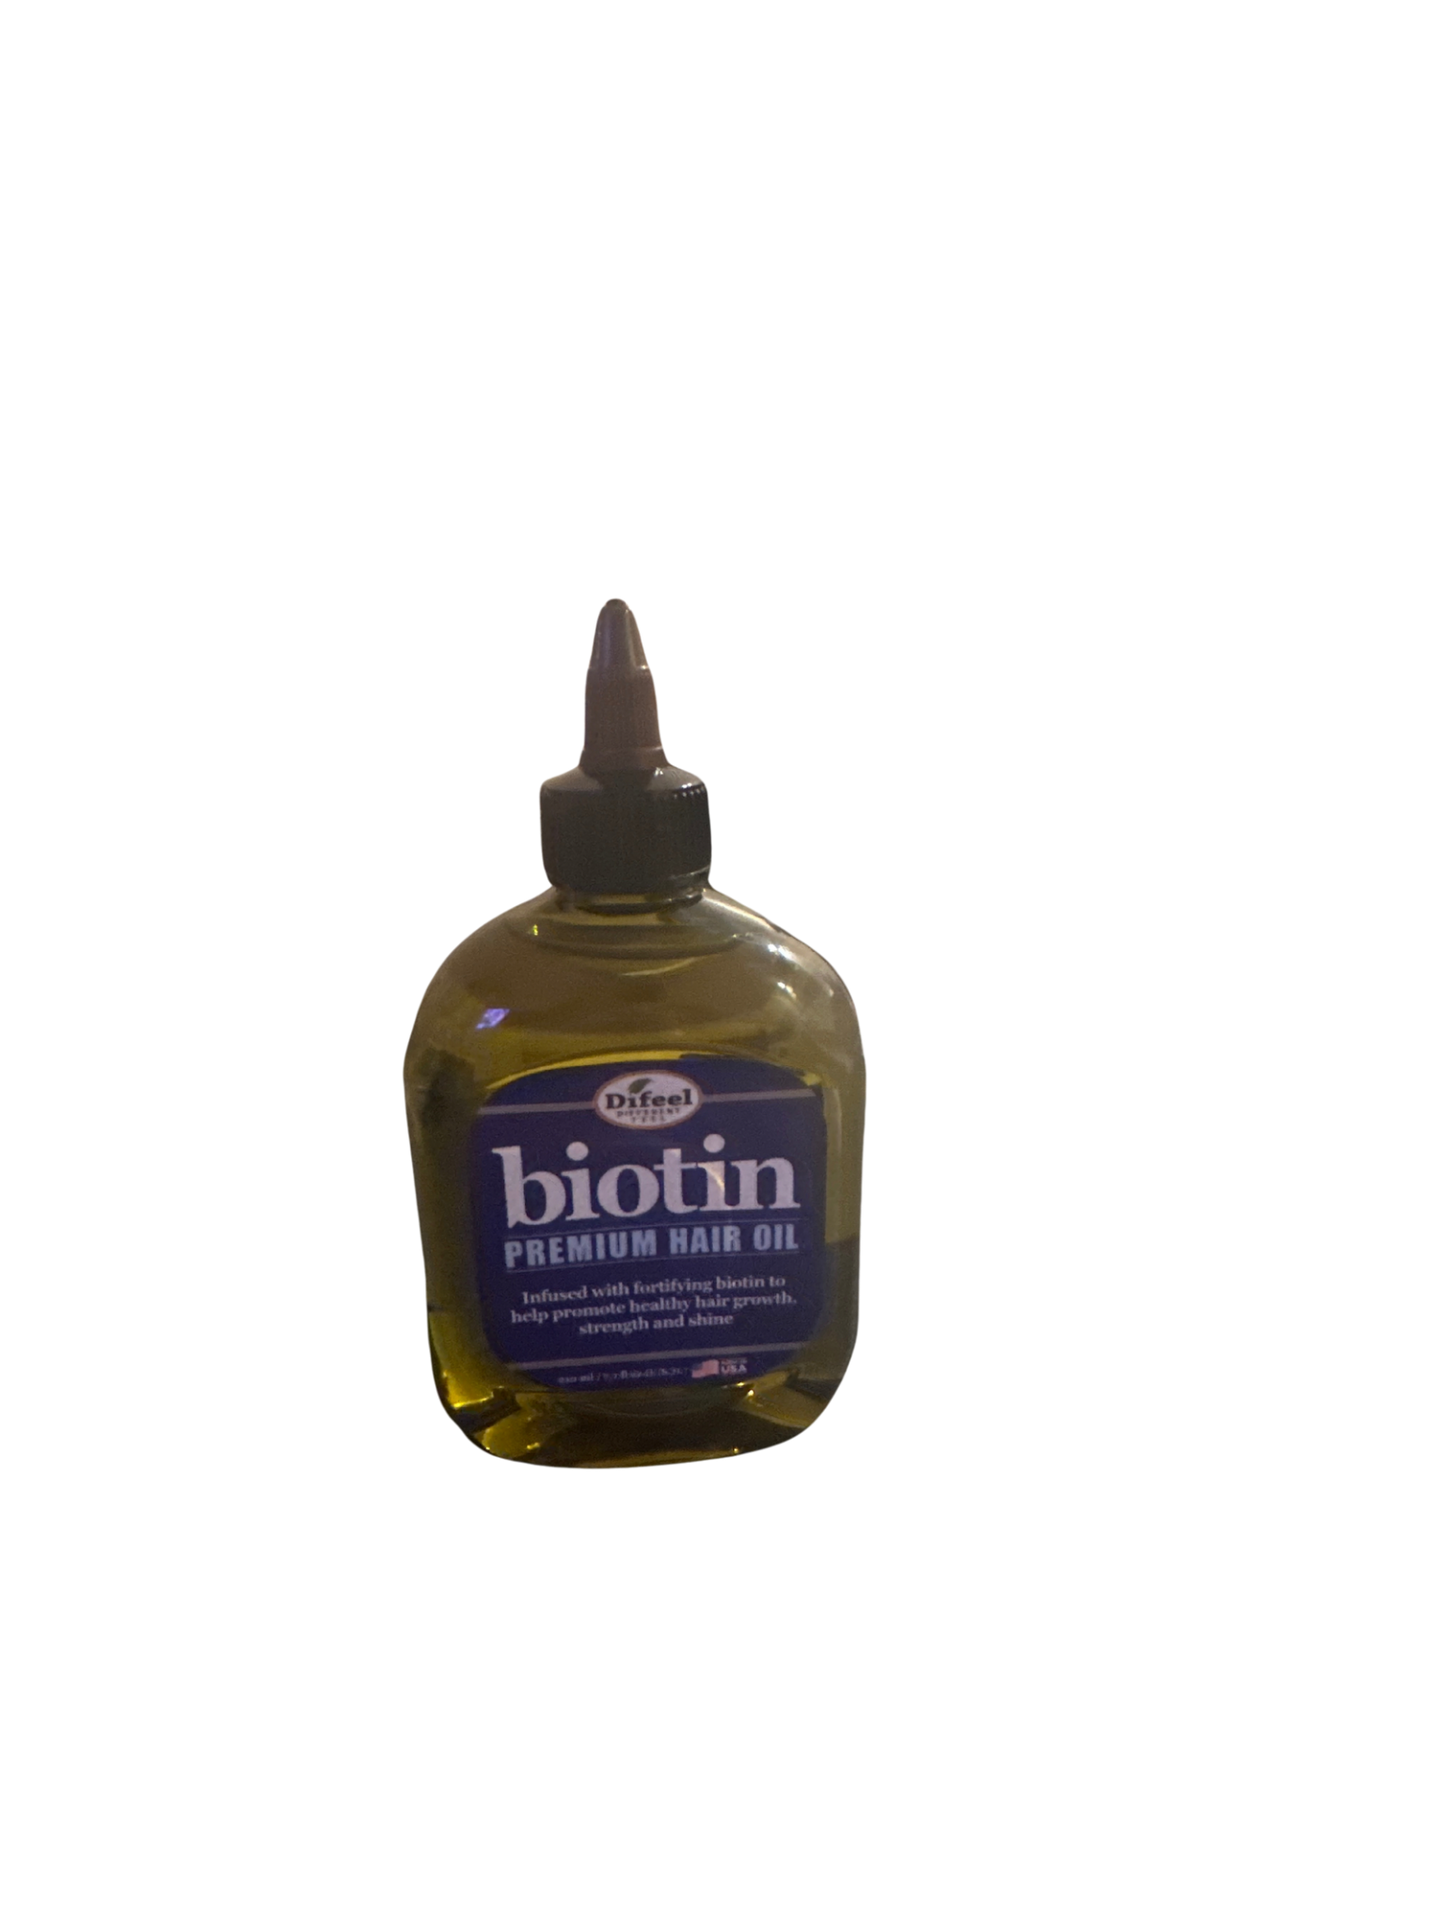 Biotin premium hair oil